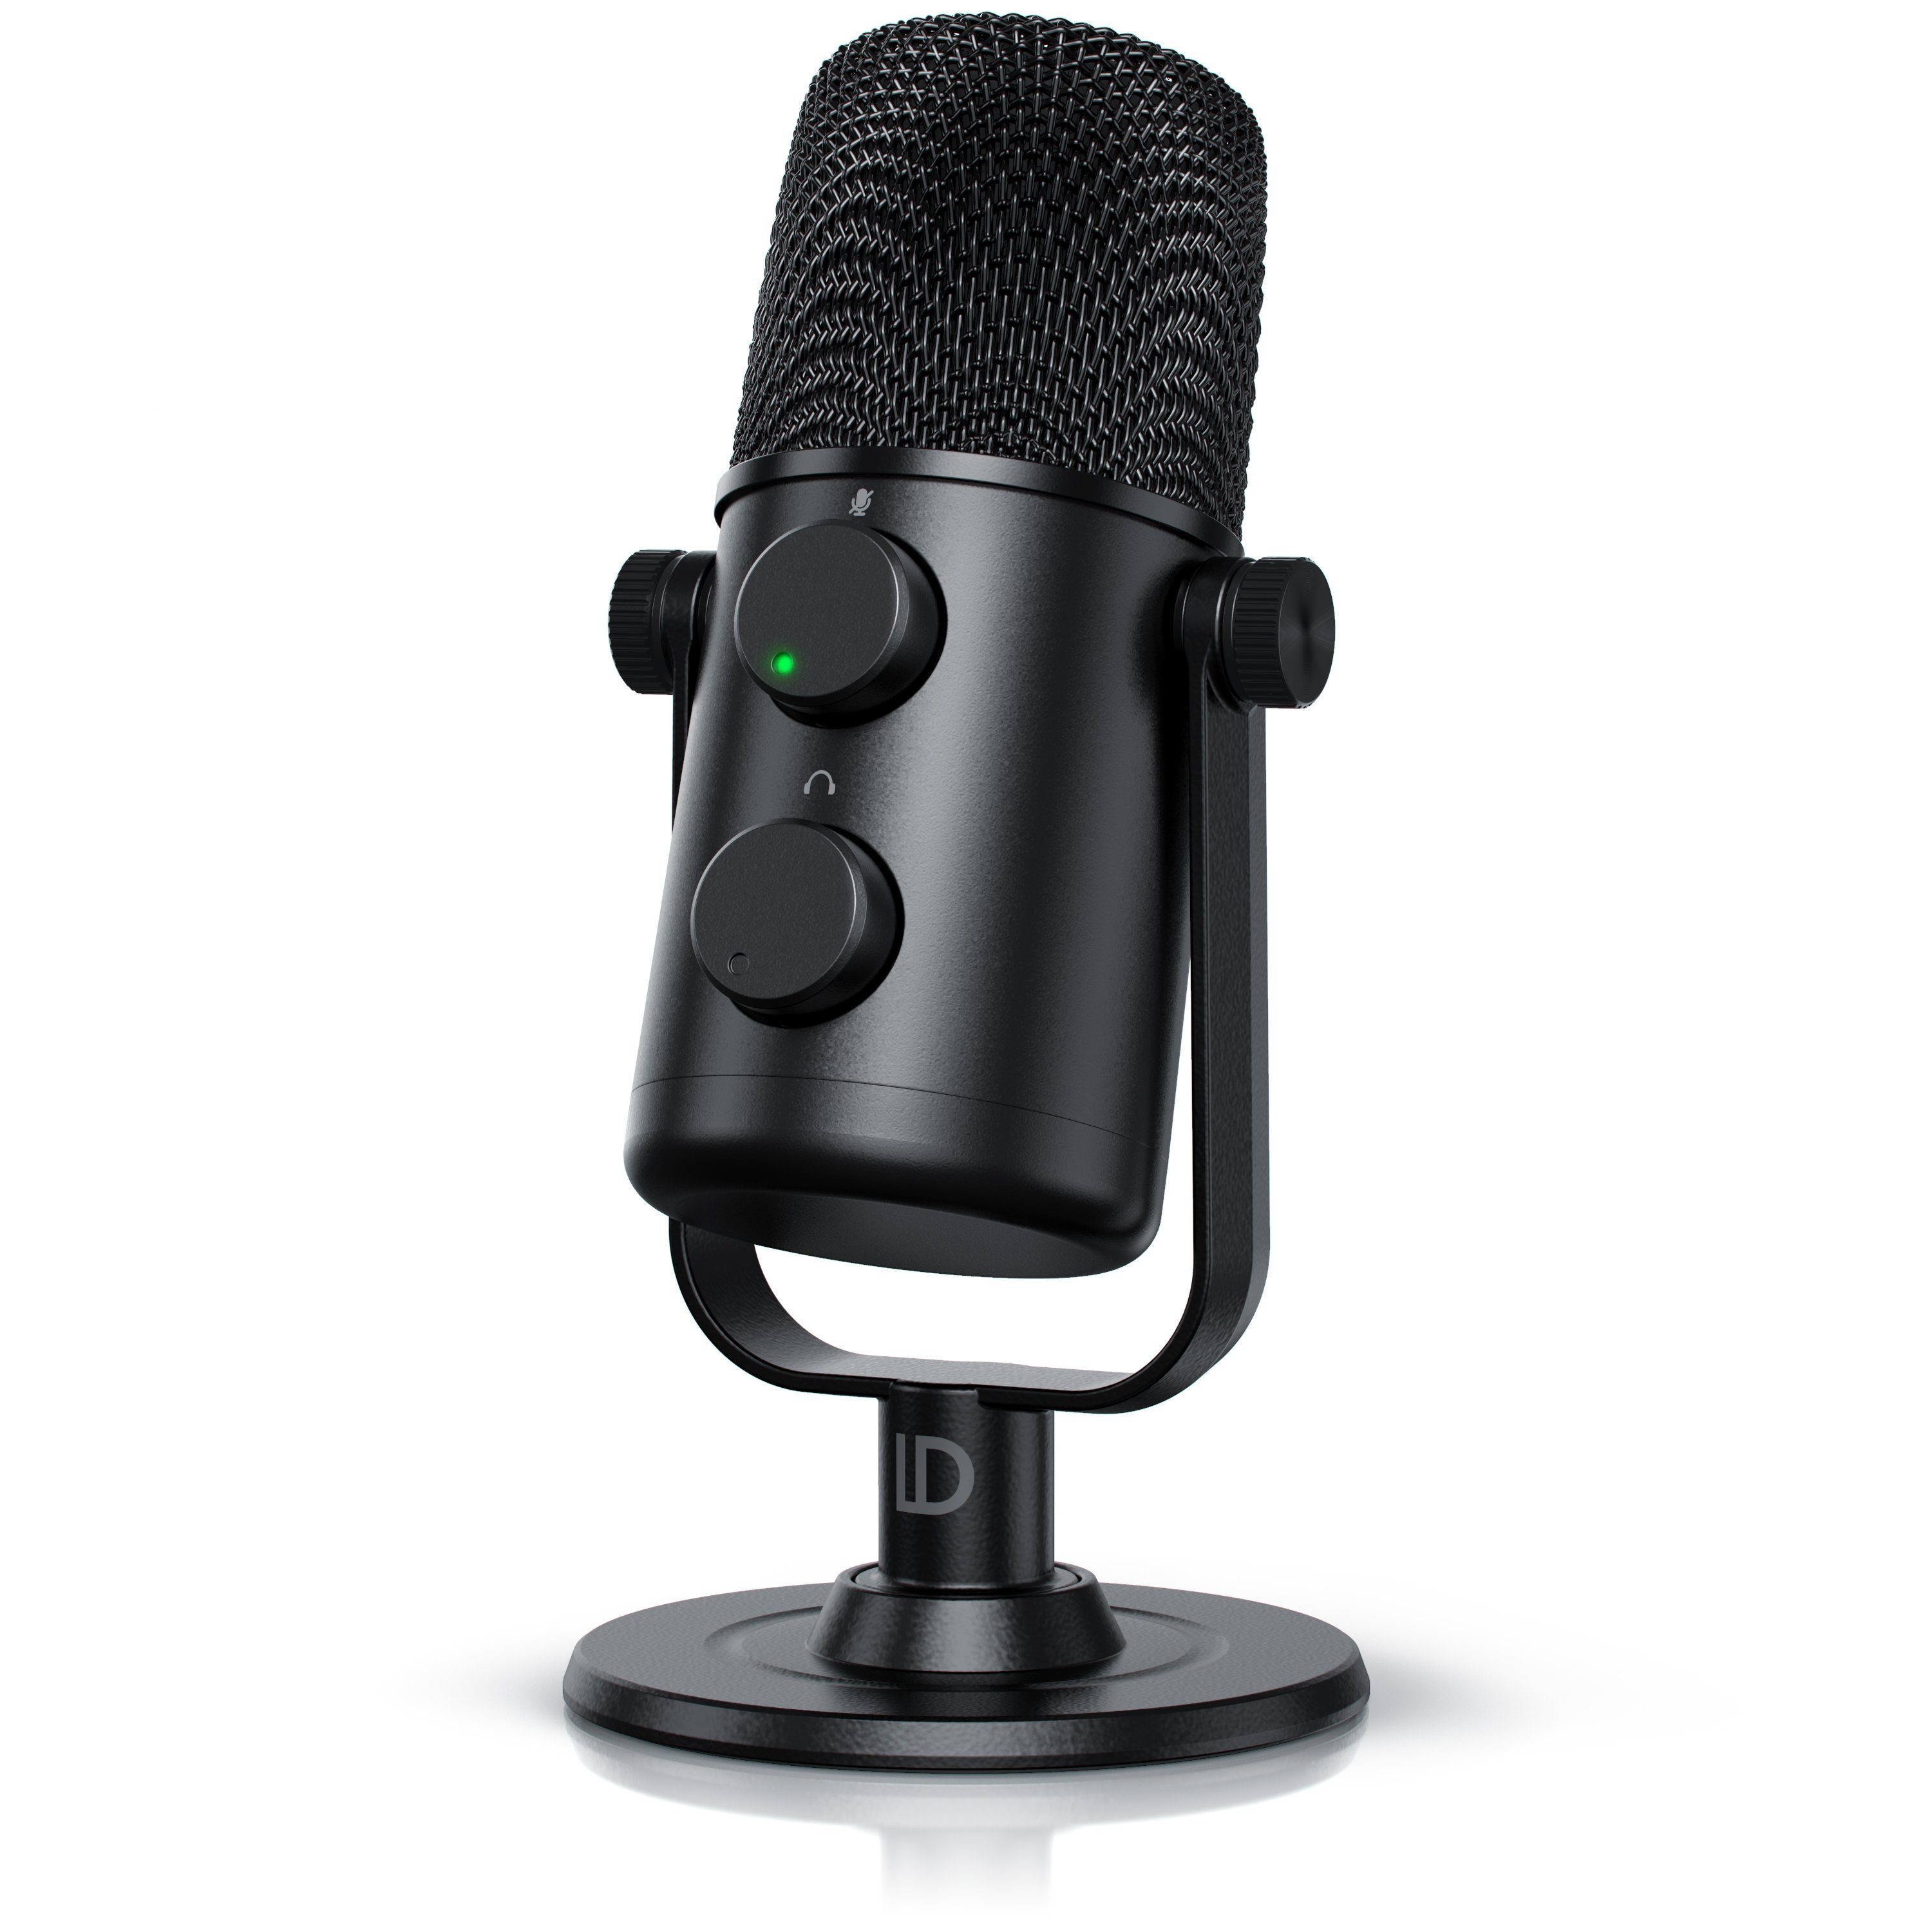 Podcast-Mikrofon-Set mit Armrahmen Lager Sprachgesang mit USB-Kabel für Video-Dubbing Nierenmikrofon für Windows 7 OS X 10.9 und höher 2 kg LiNKFOR USB-Kondensatormikrofon mit Lautstärkeregler 